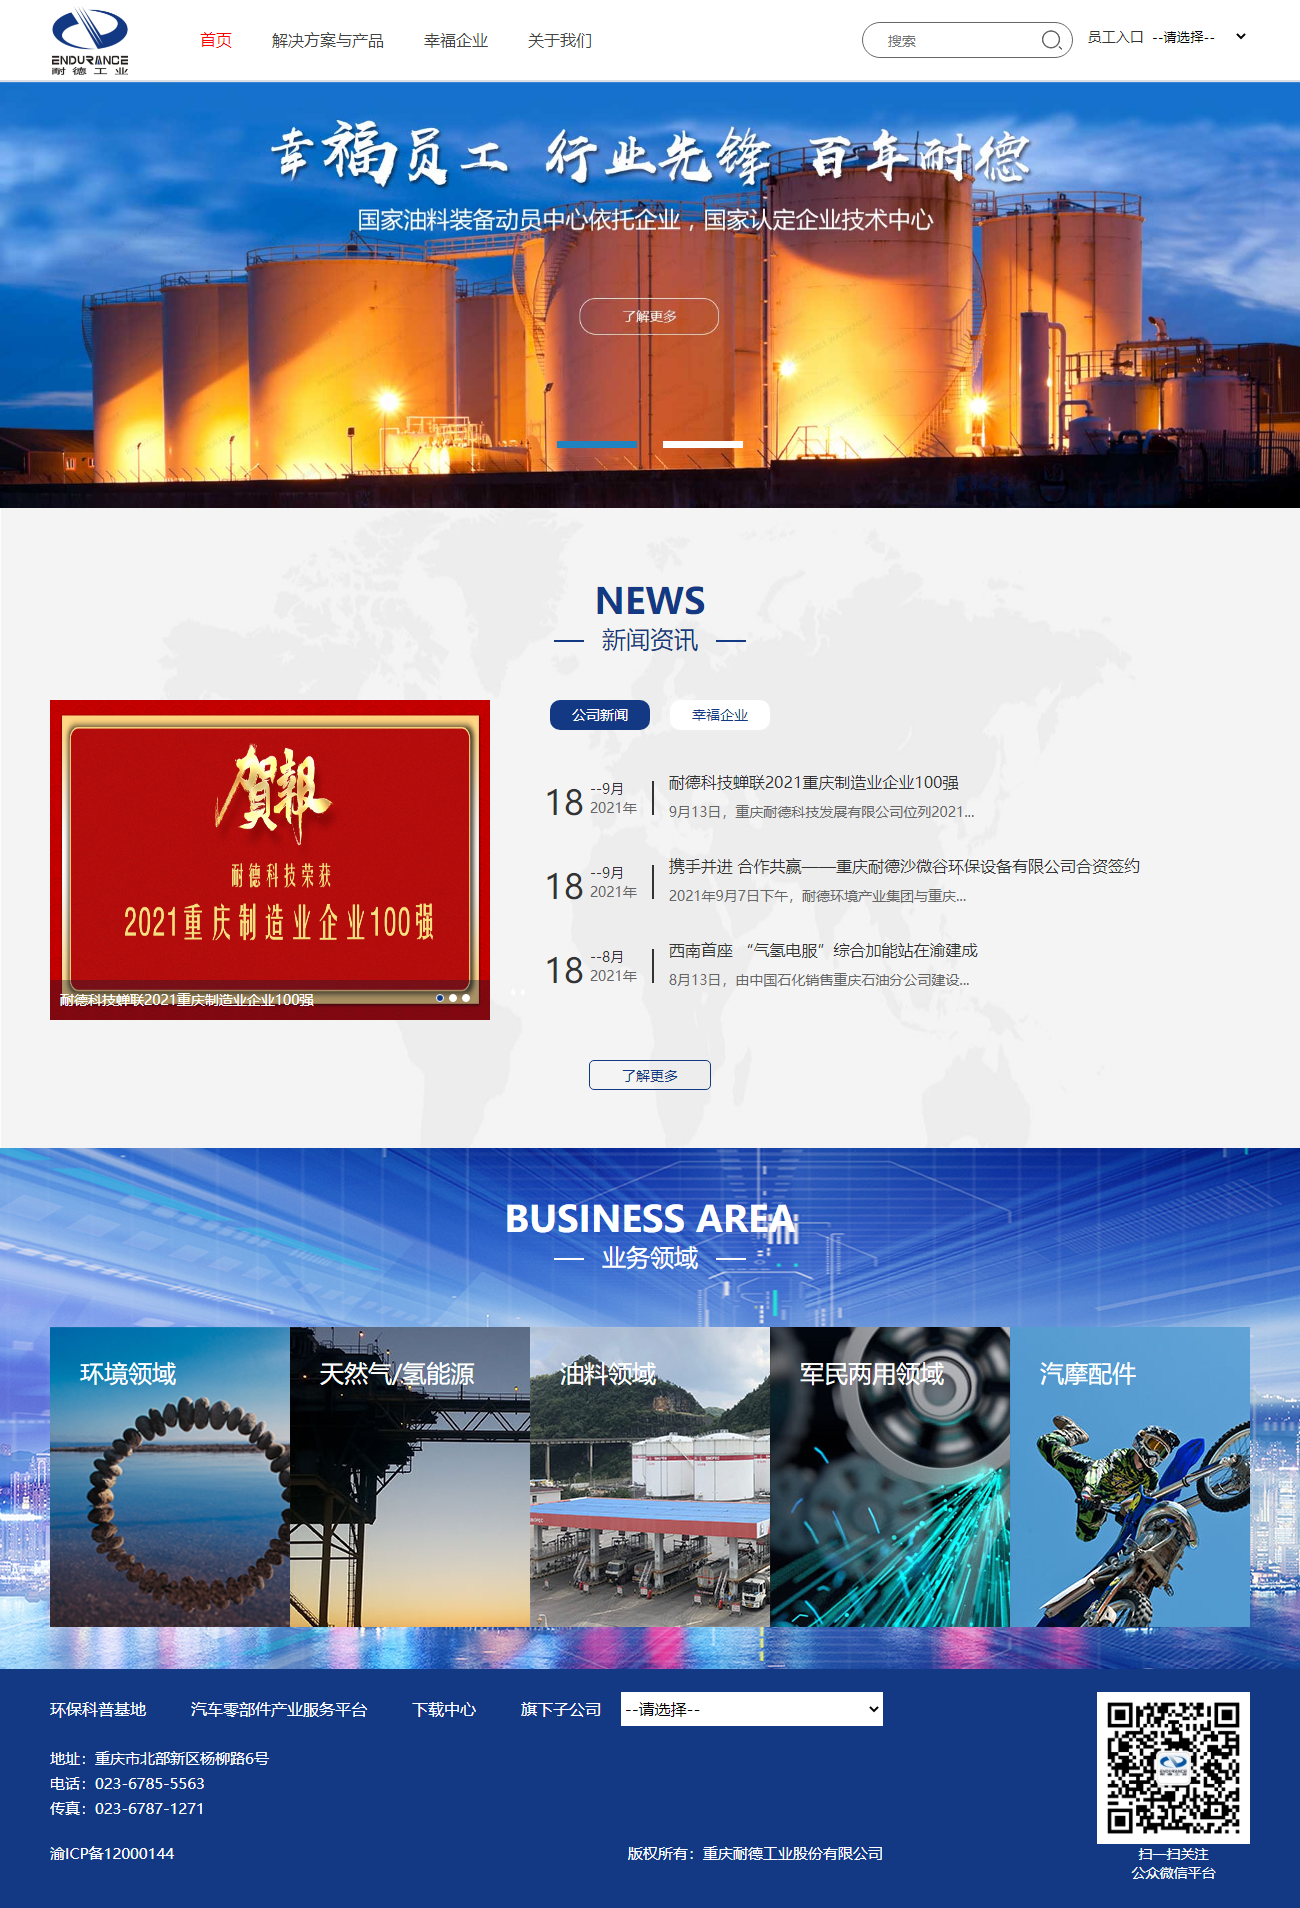 重庆耐德工业股份有限公司网站案例